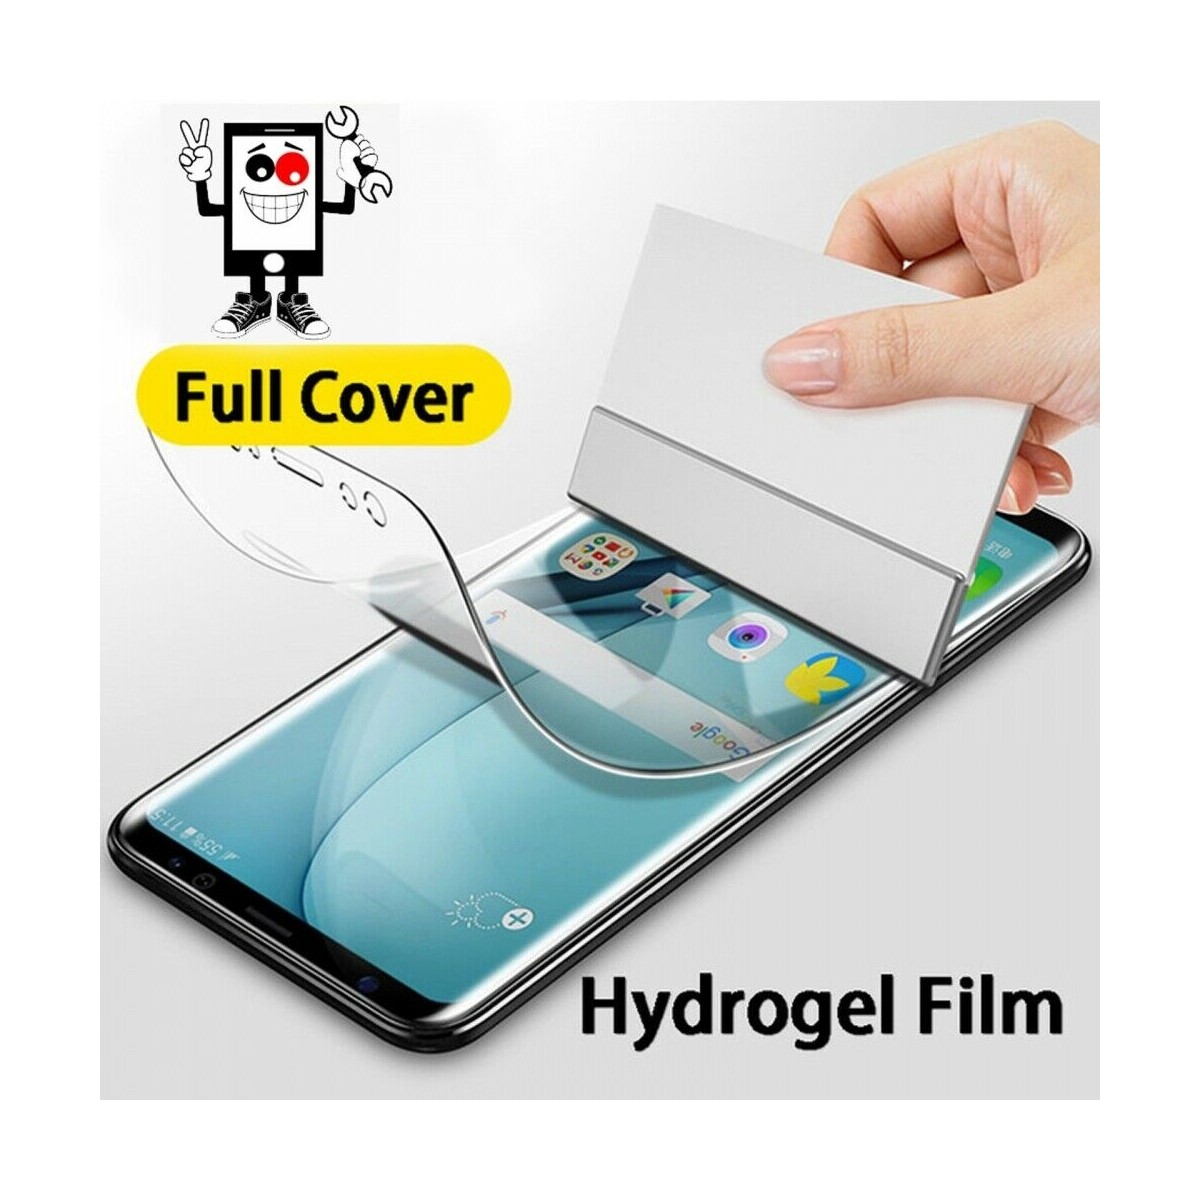 Protector Trasero Autorreparable de Hidrogel para Apple iPhone 7 Plus